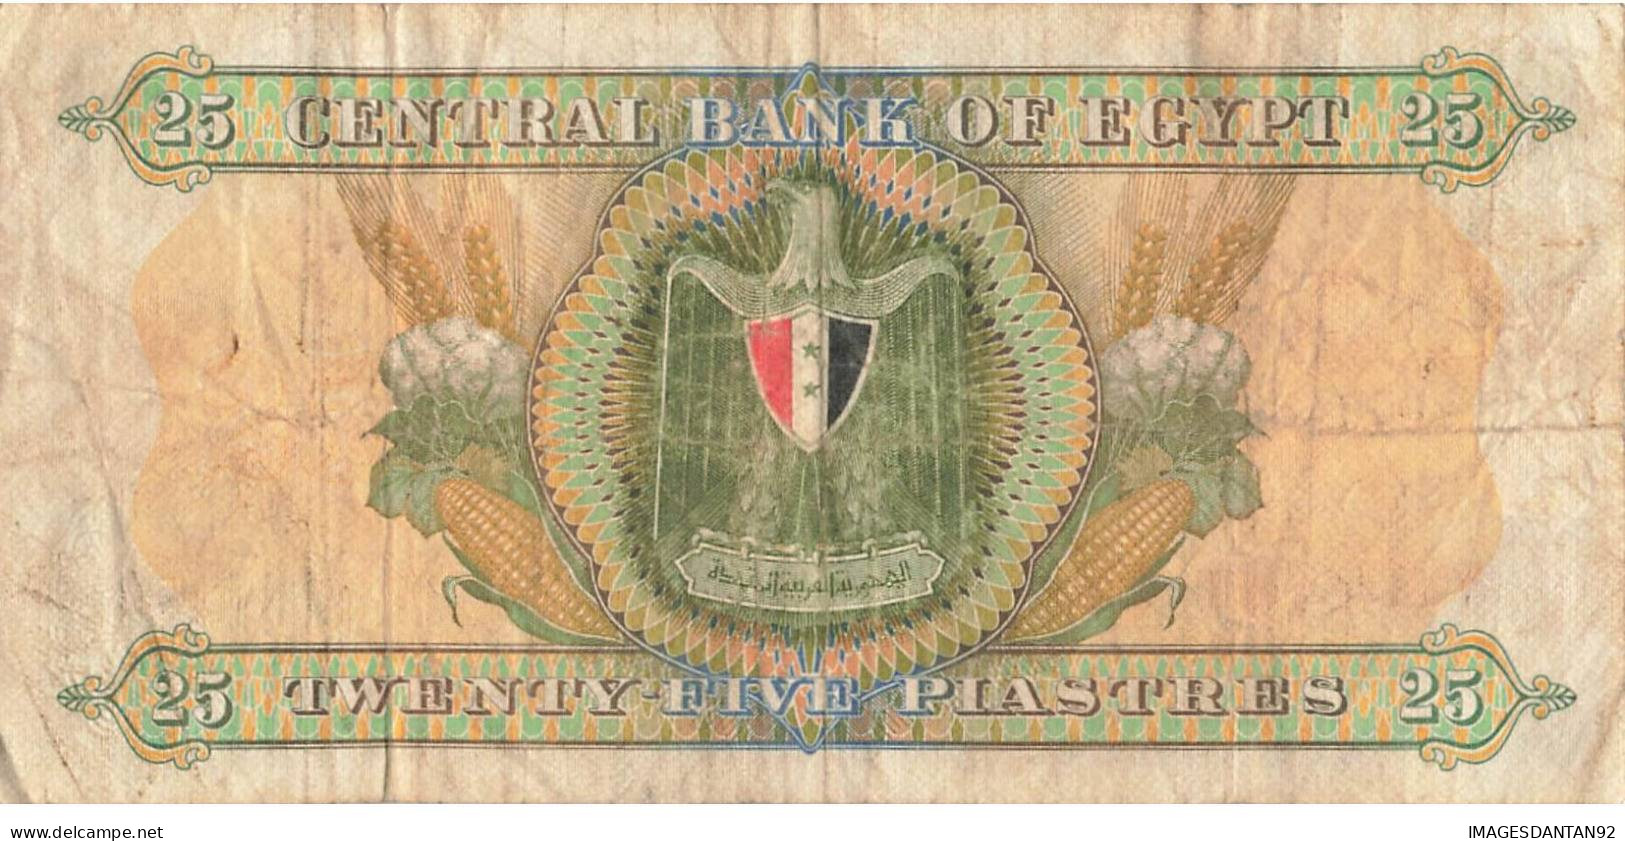 EGYPTE EGYPT 17 BANK NOTE PIASTRE POUND